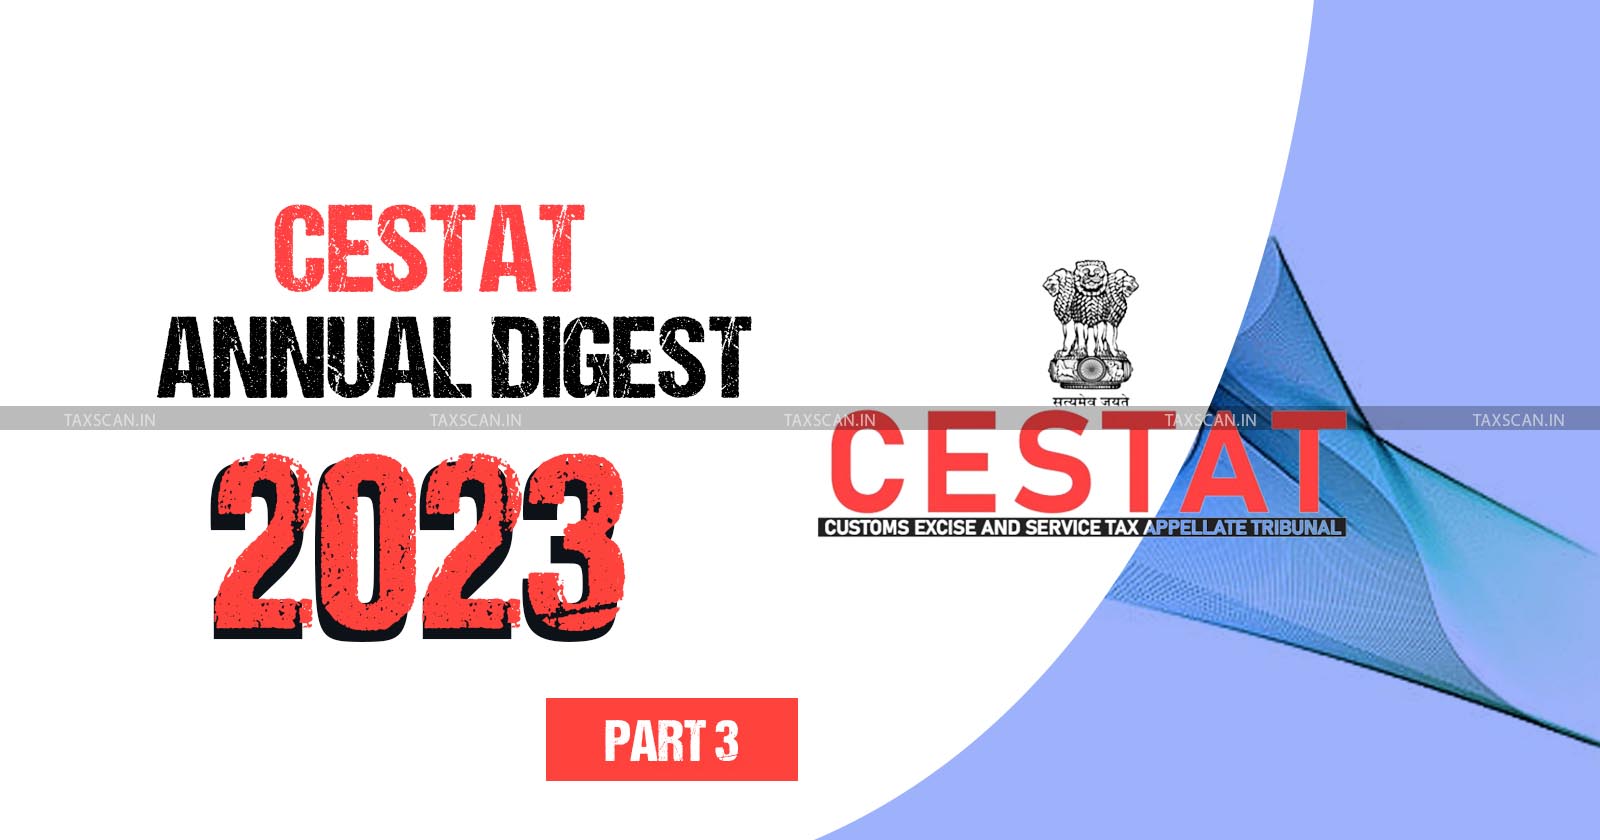 CESTAT Annual Digest 2023 - Annual Digest 2023 - Digest - Annual Digest - Taxscan Annual Digest - Taxscan